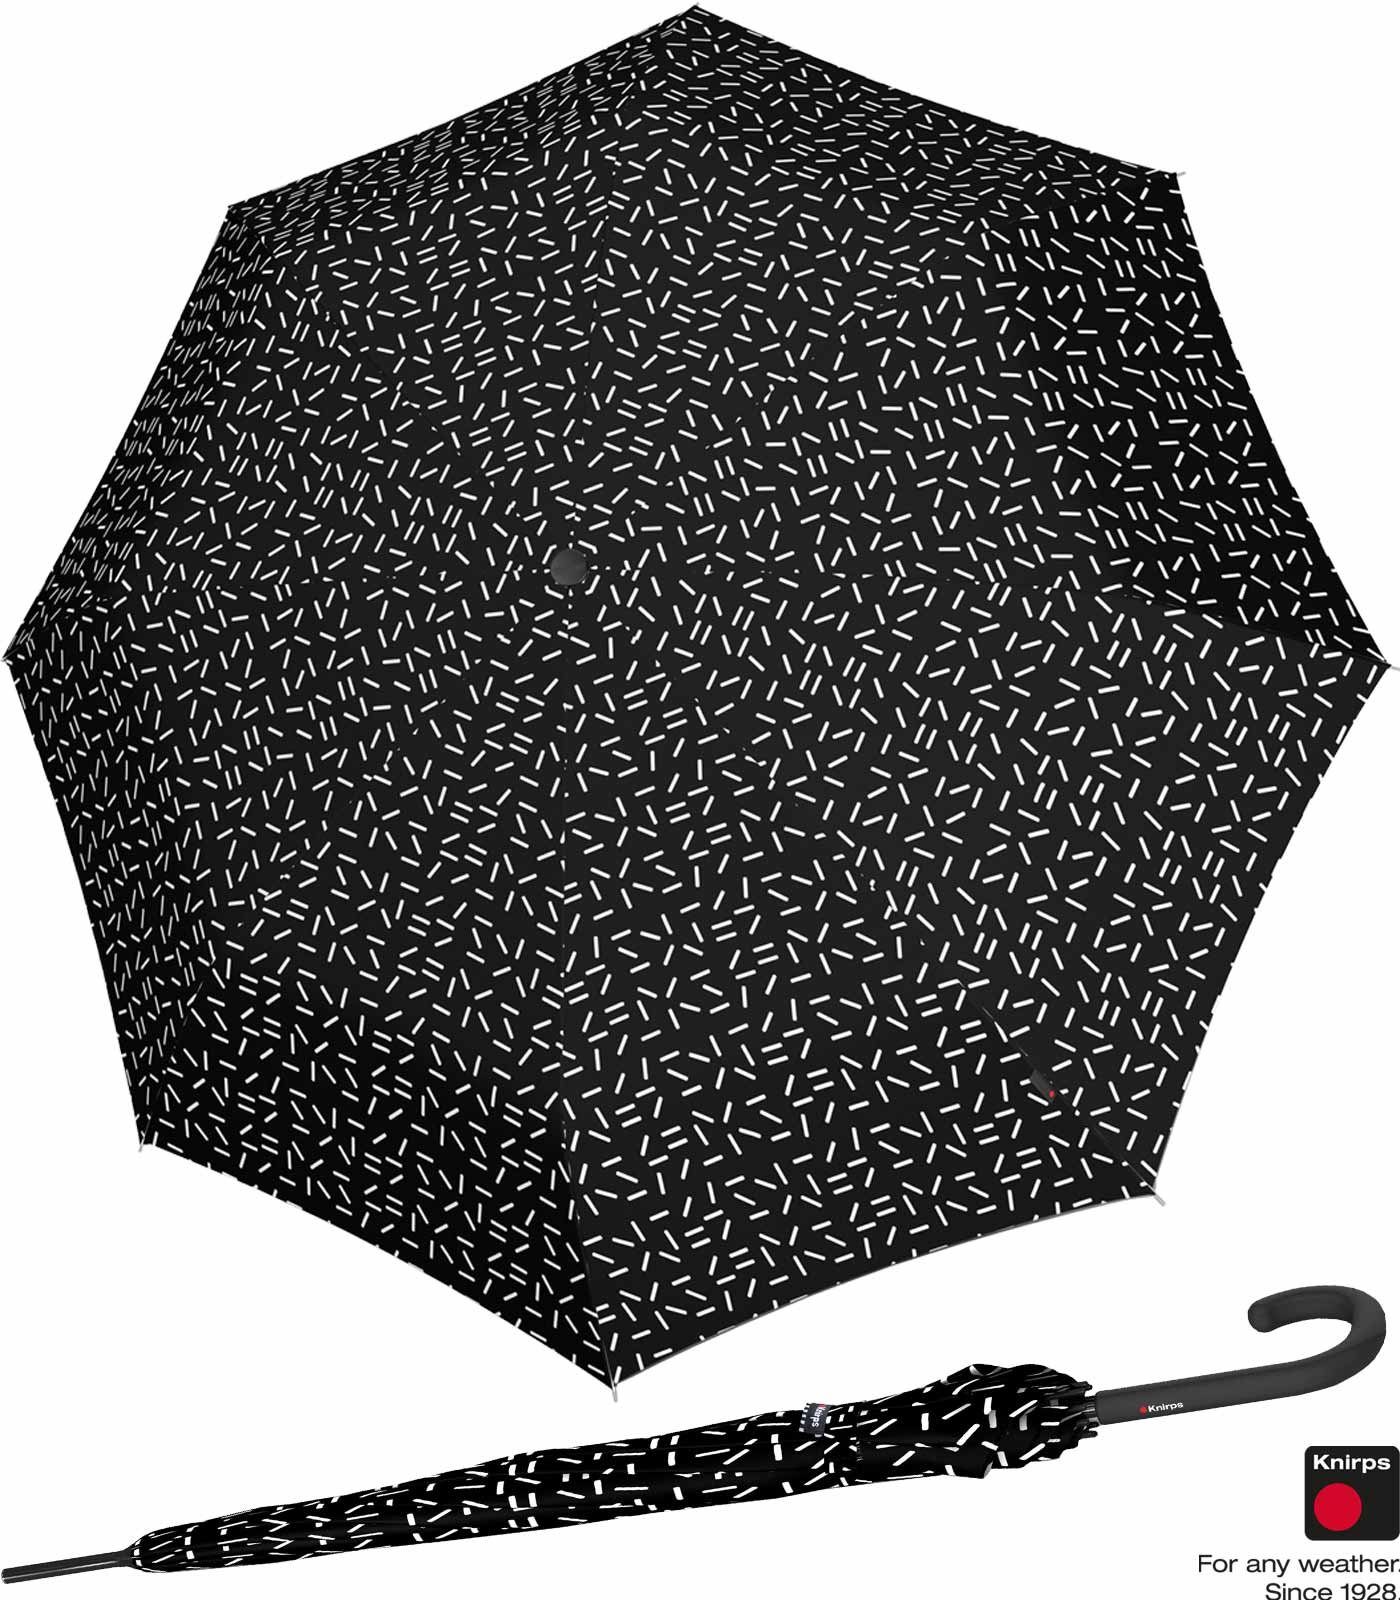 Knirps® Langregenschirm Damen A.760 Auf-Automatik - 2Dance, groß und stabil schwarz